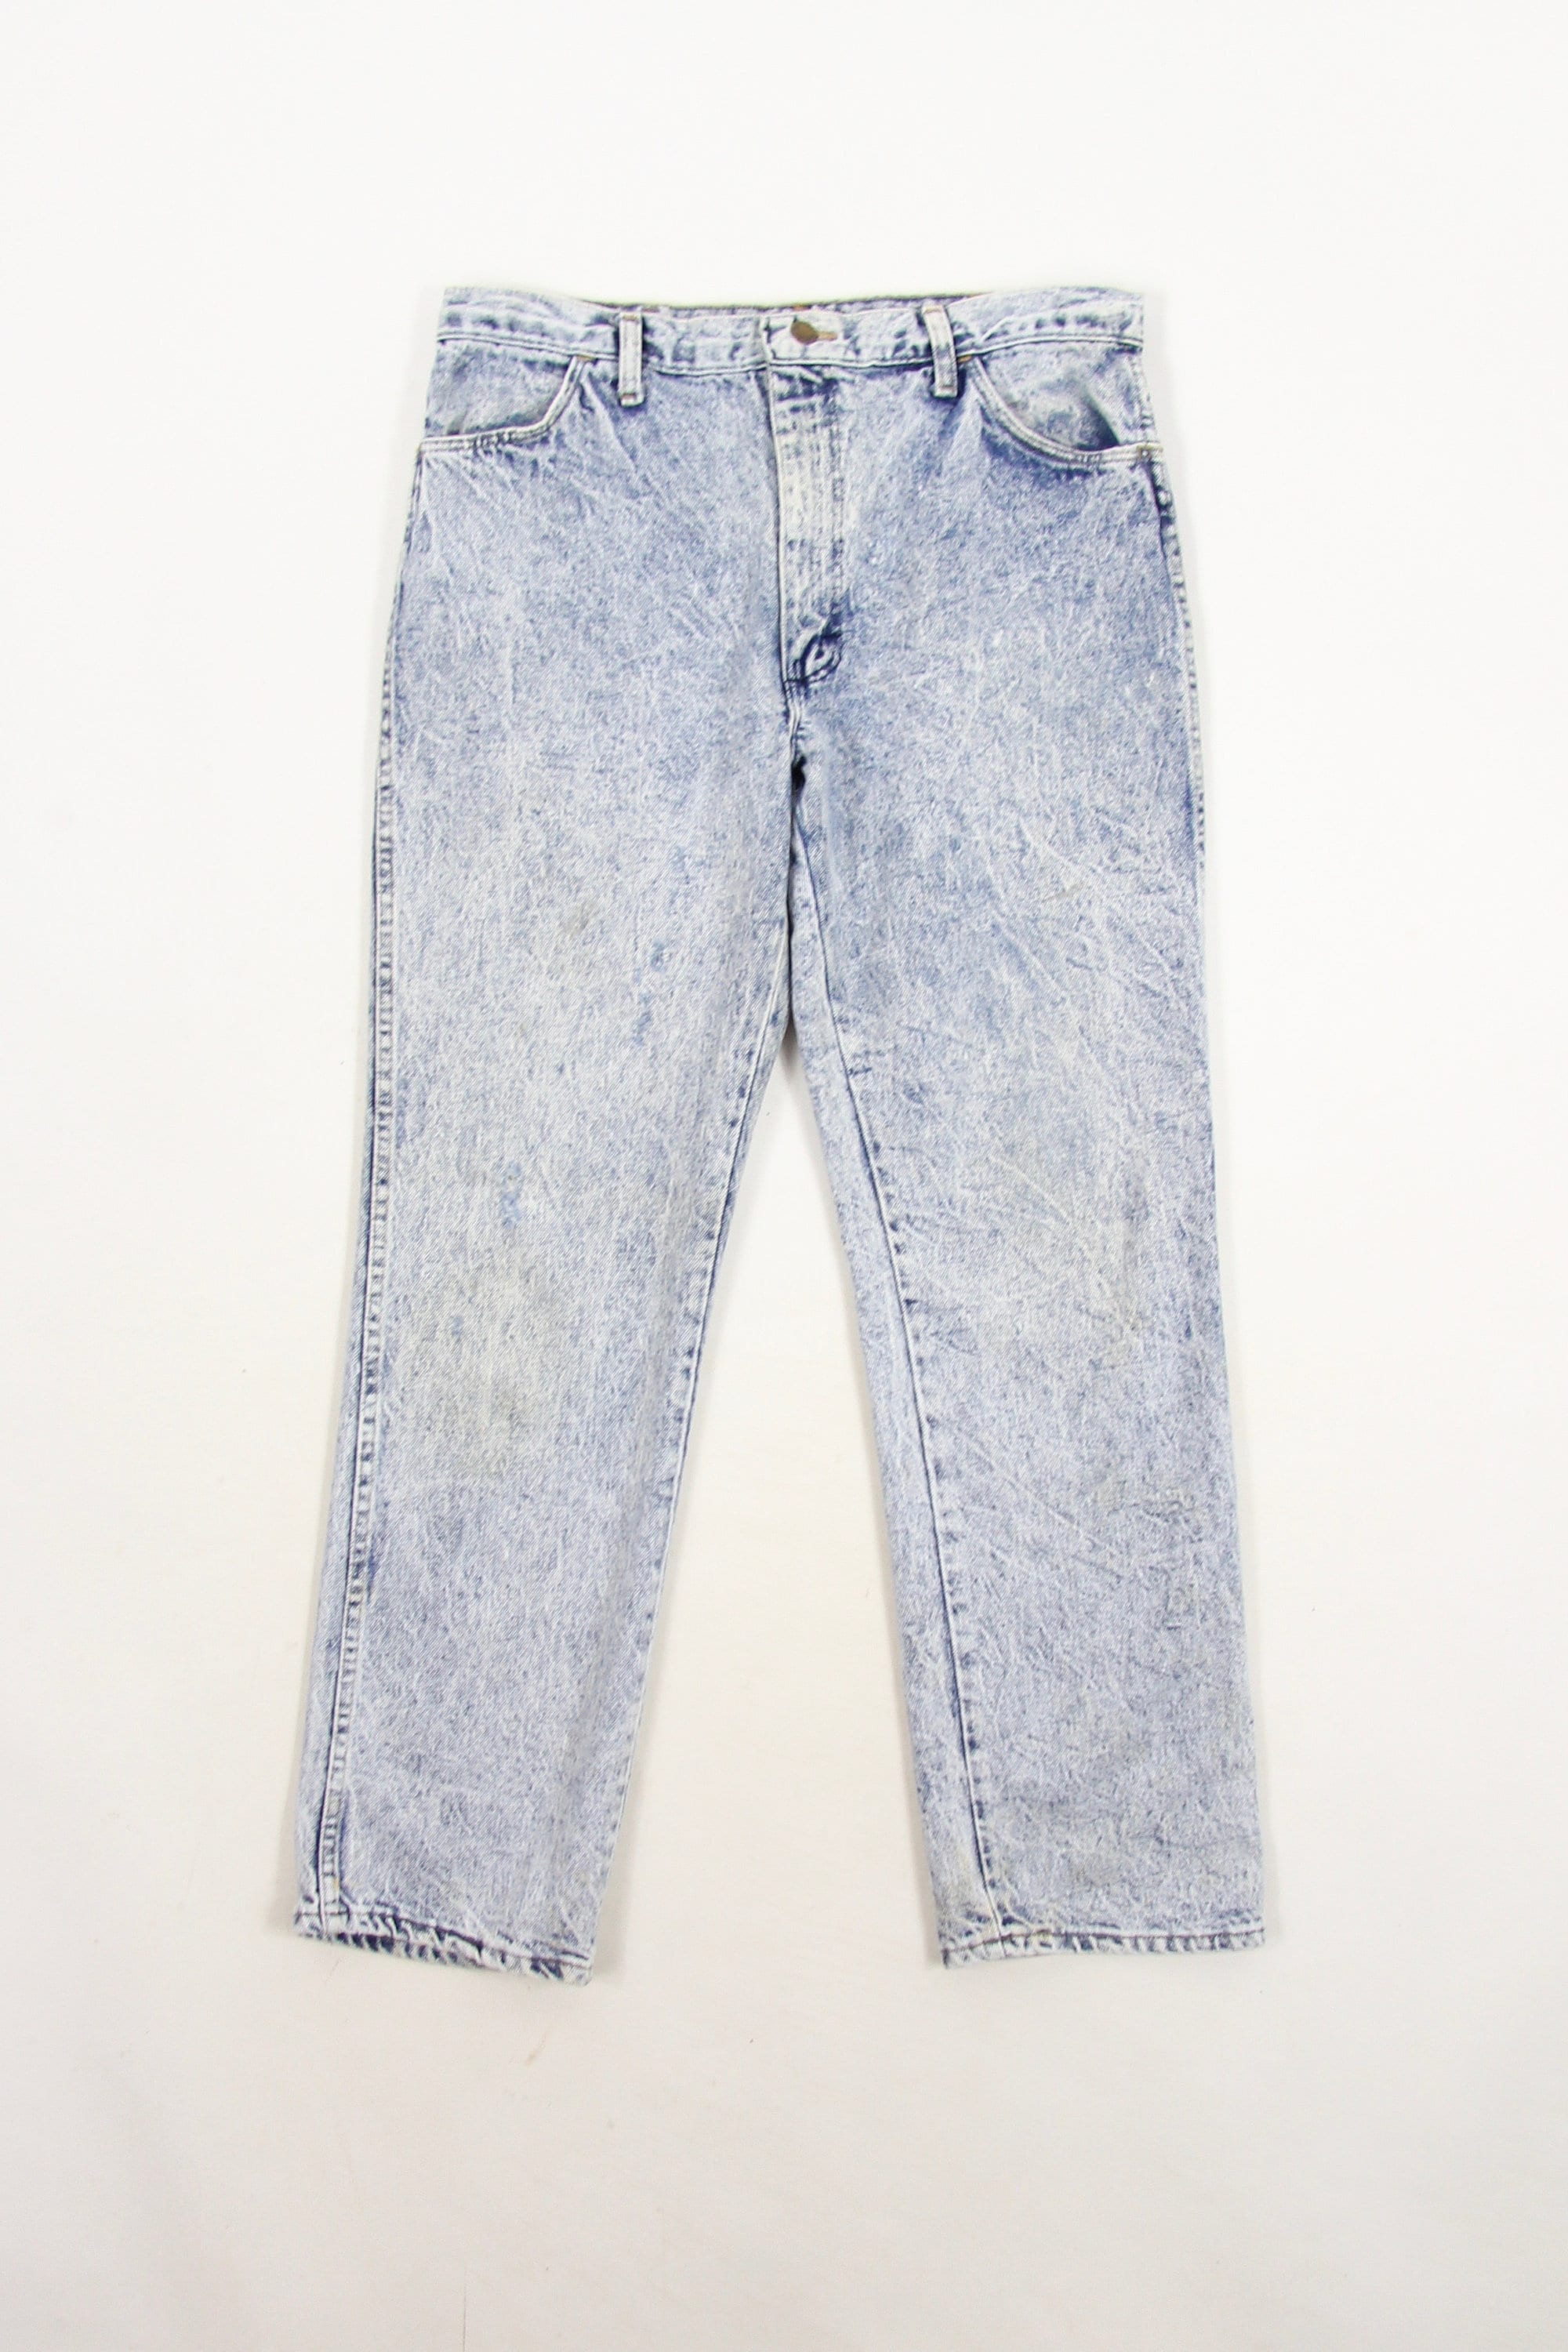 Men's Acid Wash Jeans Distressed Vintage Denim Jeans by Rustler Size 34 ...